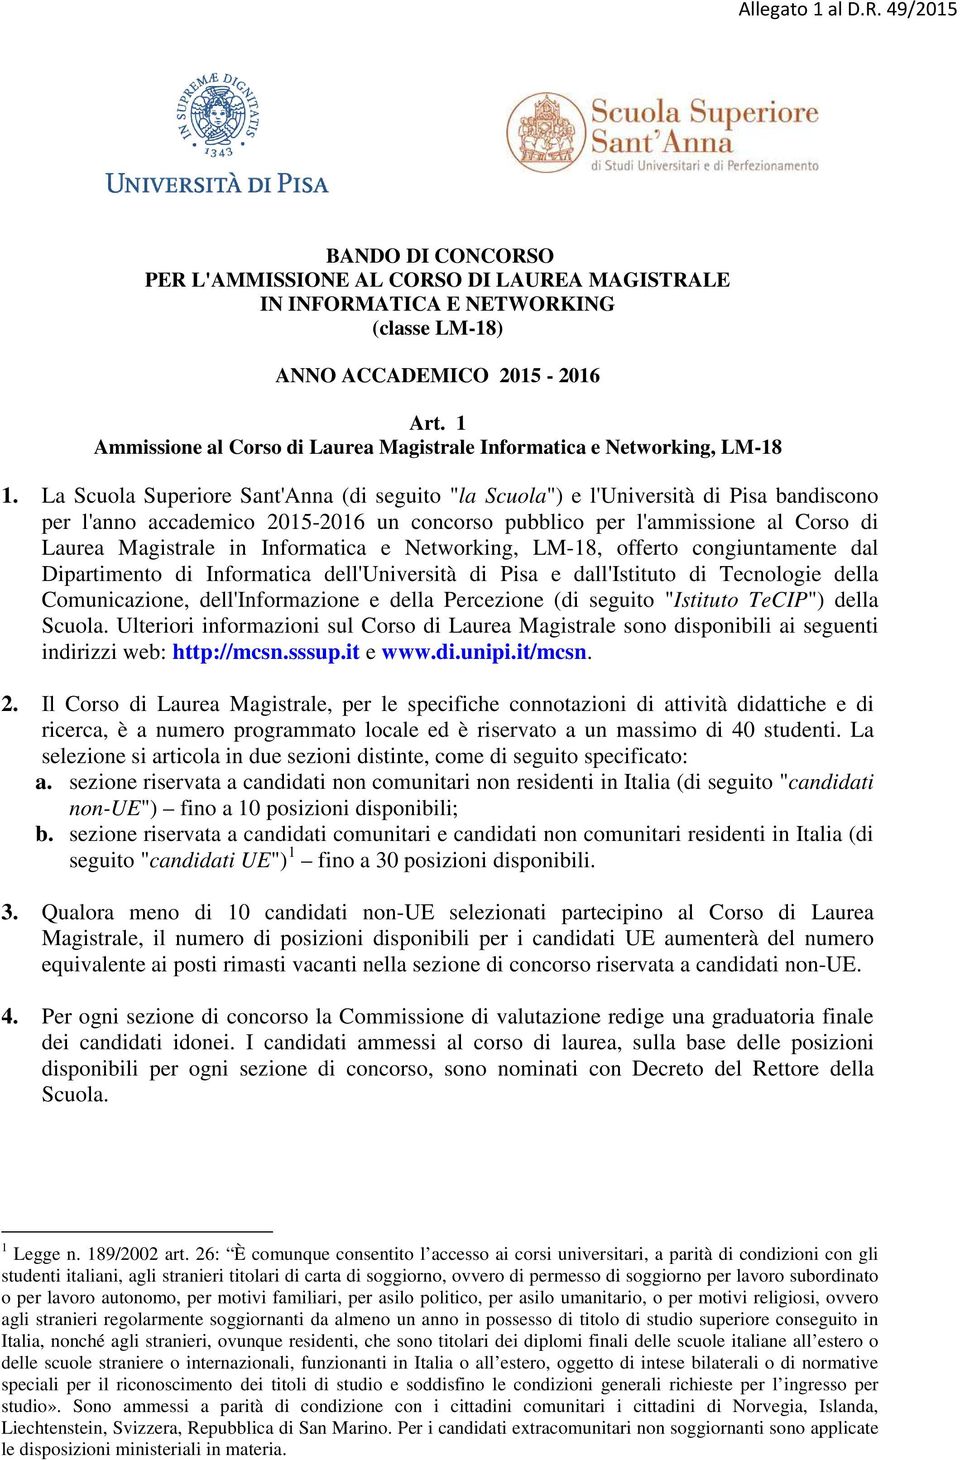 La Scuola Superiore Sant'Anna (di seguito "la Scuola") e l'università di Pisa bandiscono per l'anno accademico 2015-2016 un concorso pubblico per l'ammissione al Corso di Laurea Magistrale in